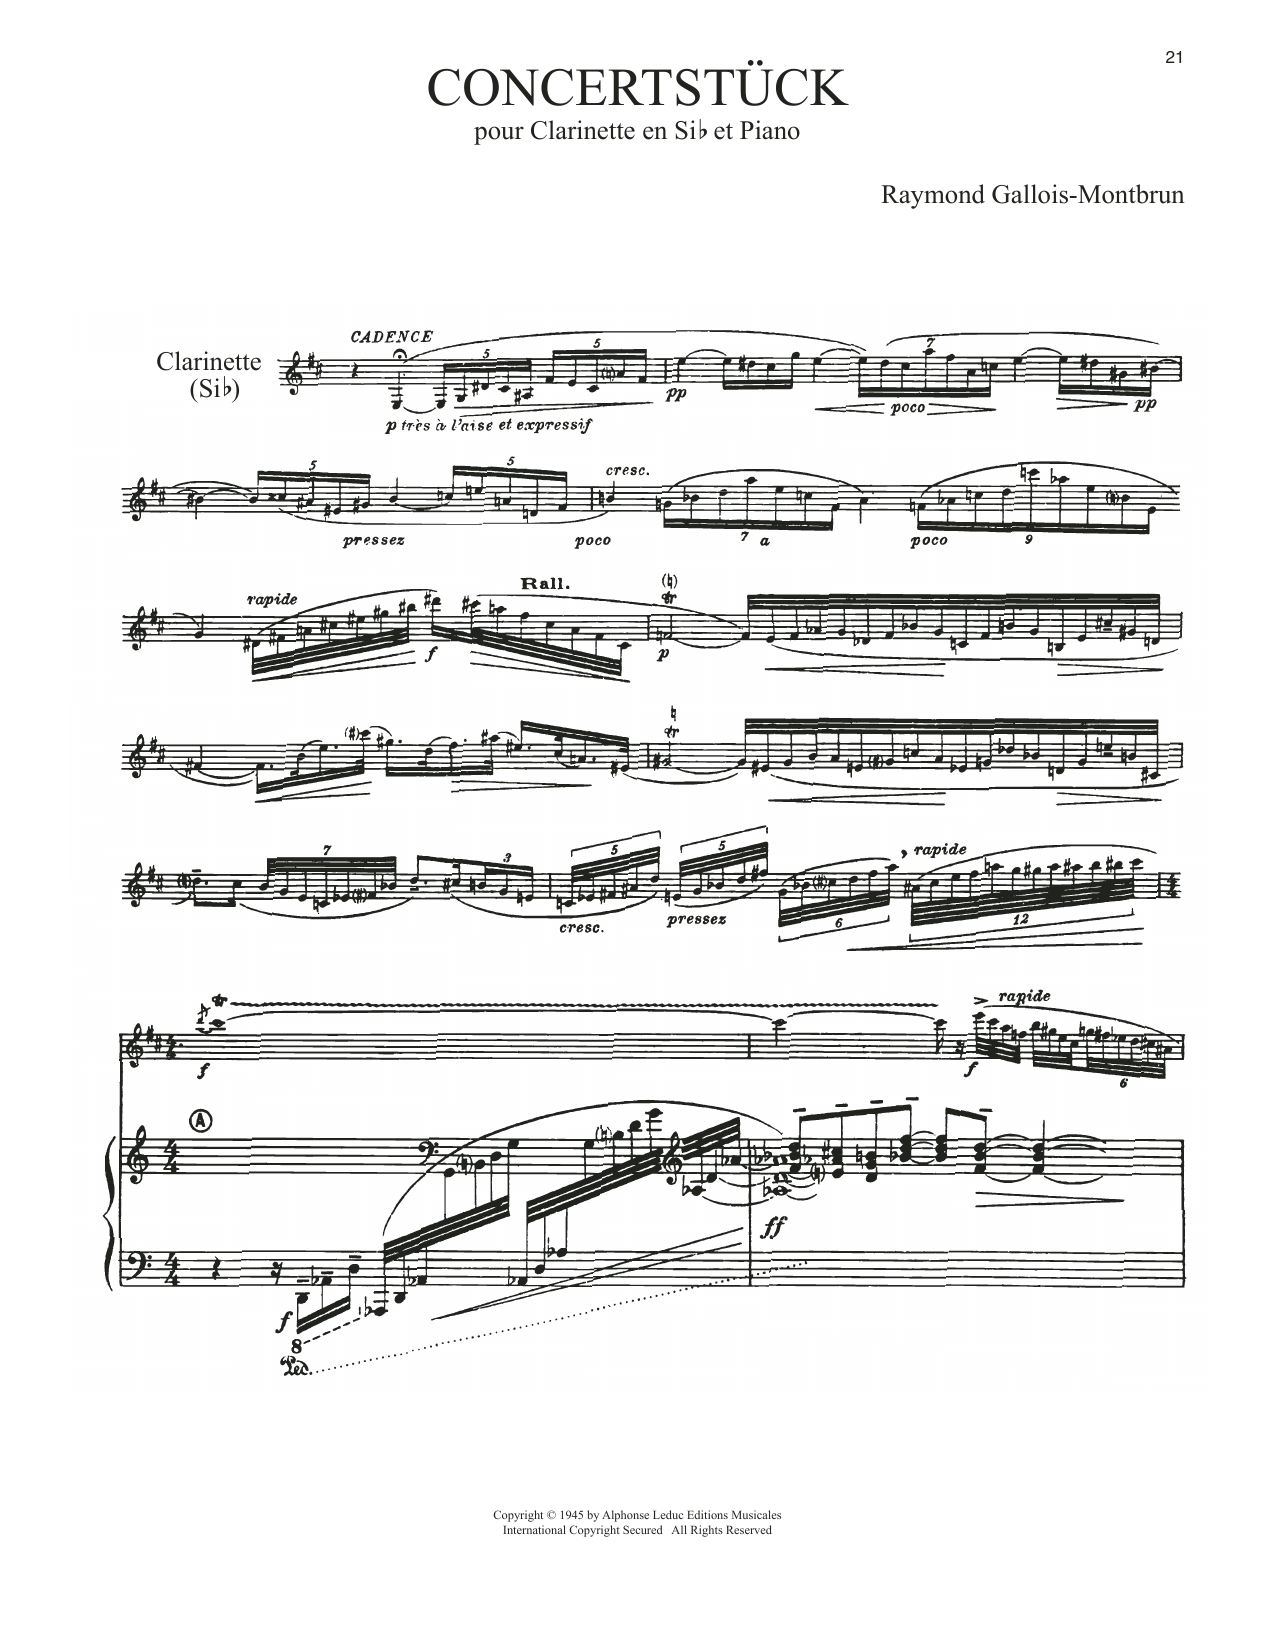 Download Raymond Gallois-Montbrun Concertstuck Sheet Music